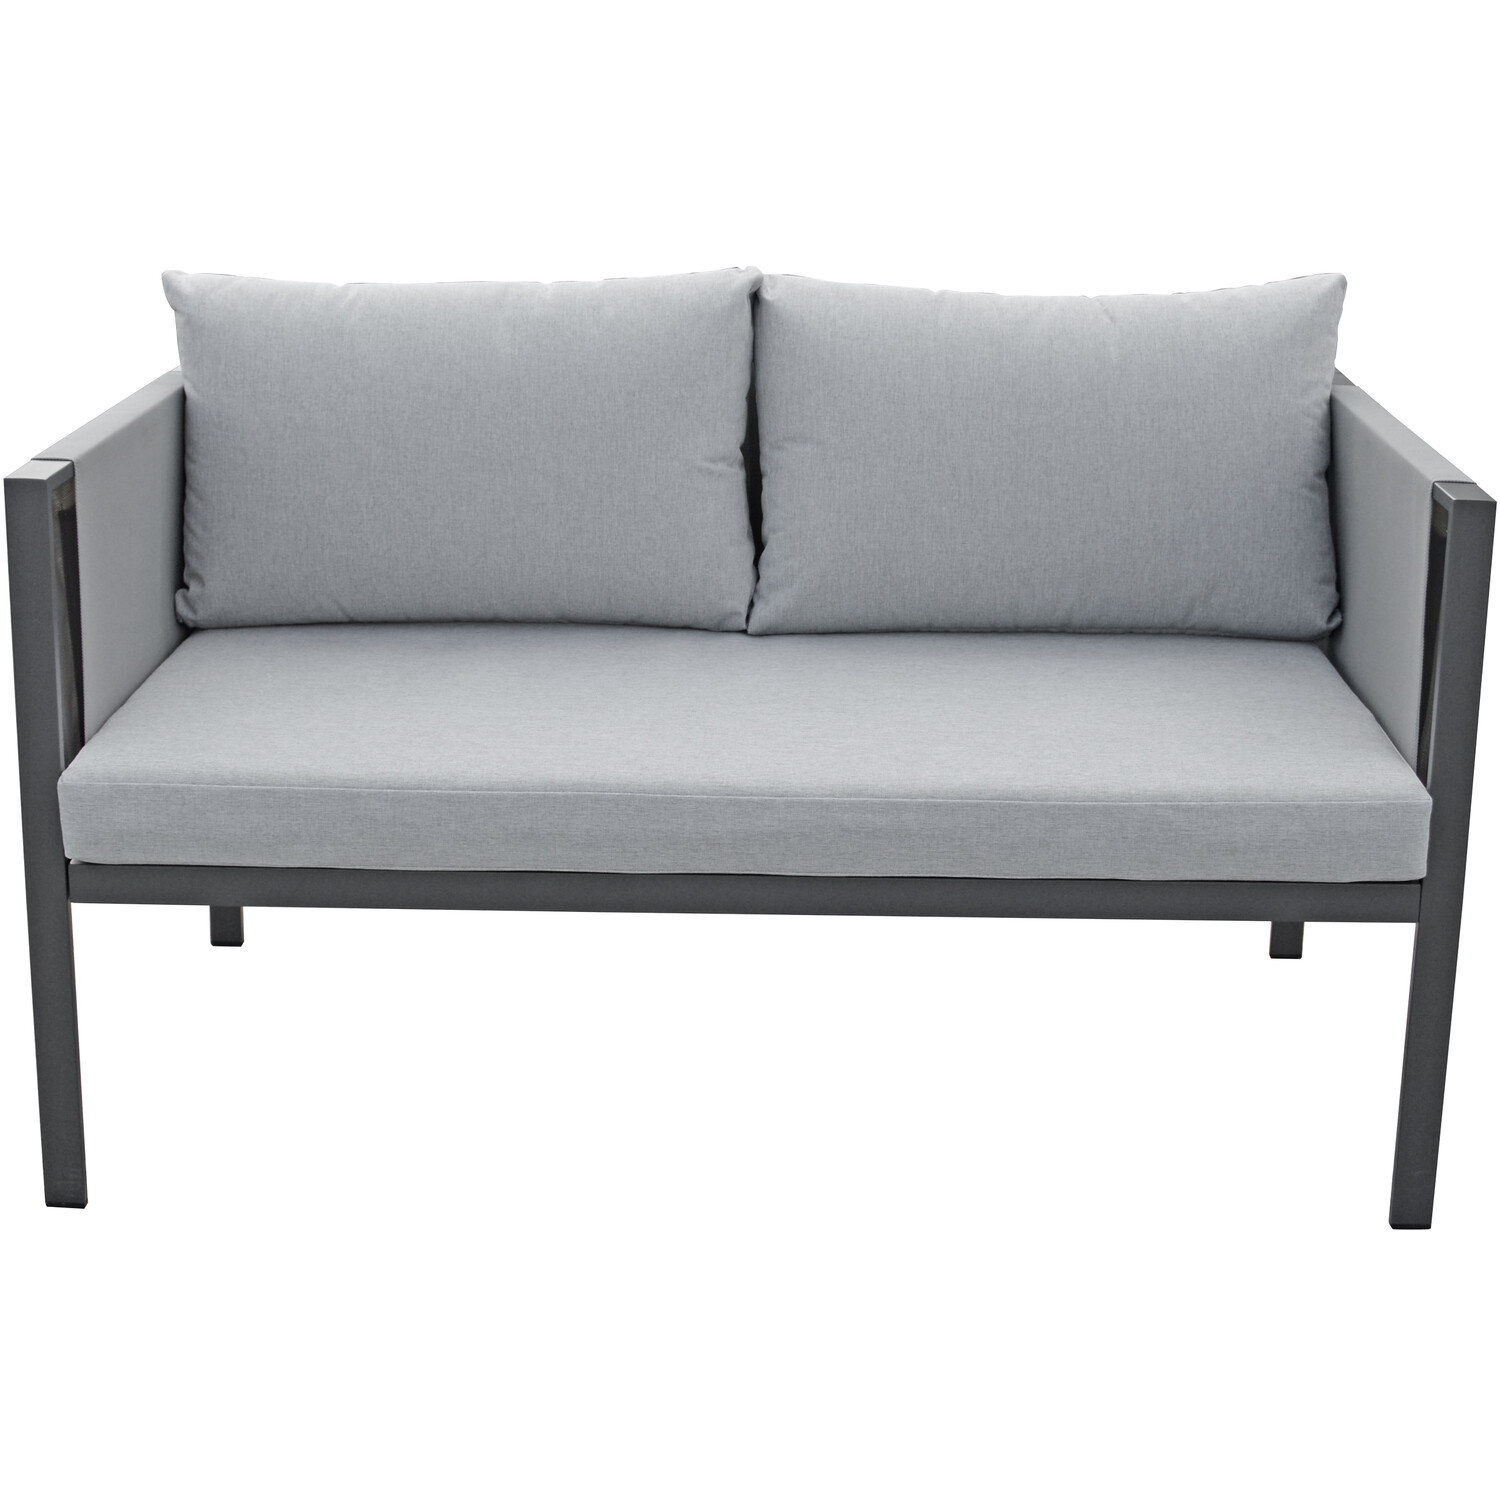 Sicily 4 Seater Grey Sofa Lounge Set Image 7